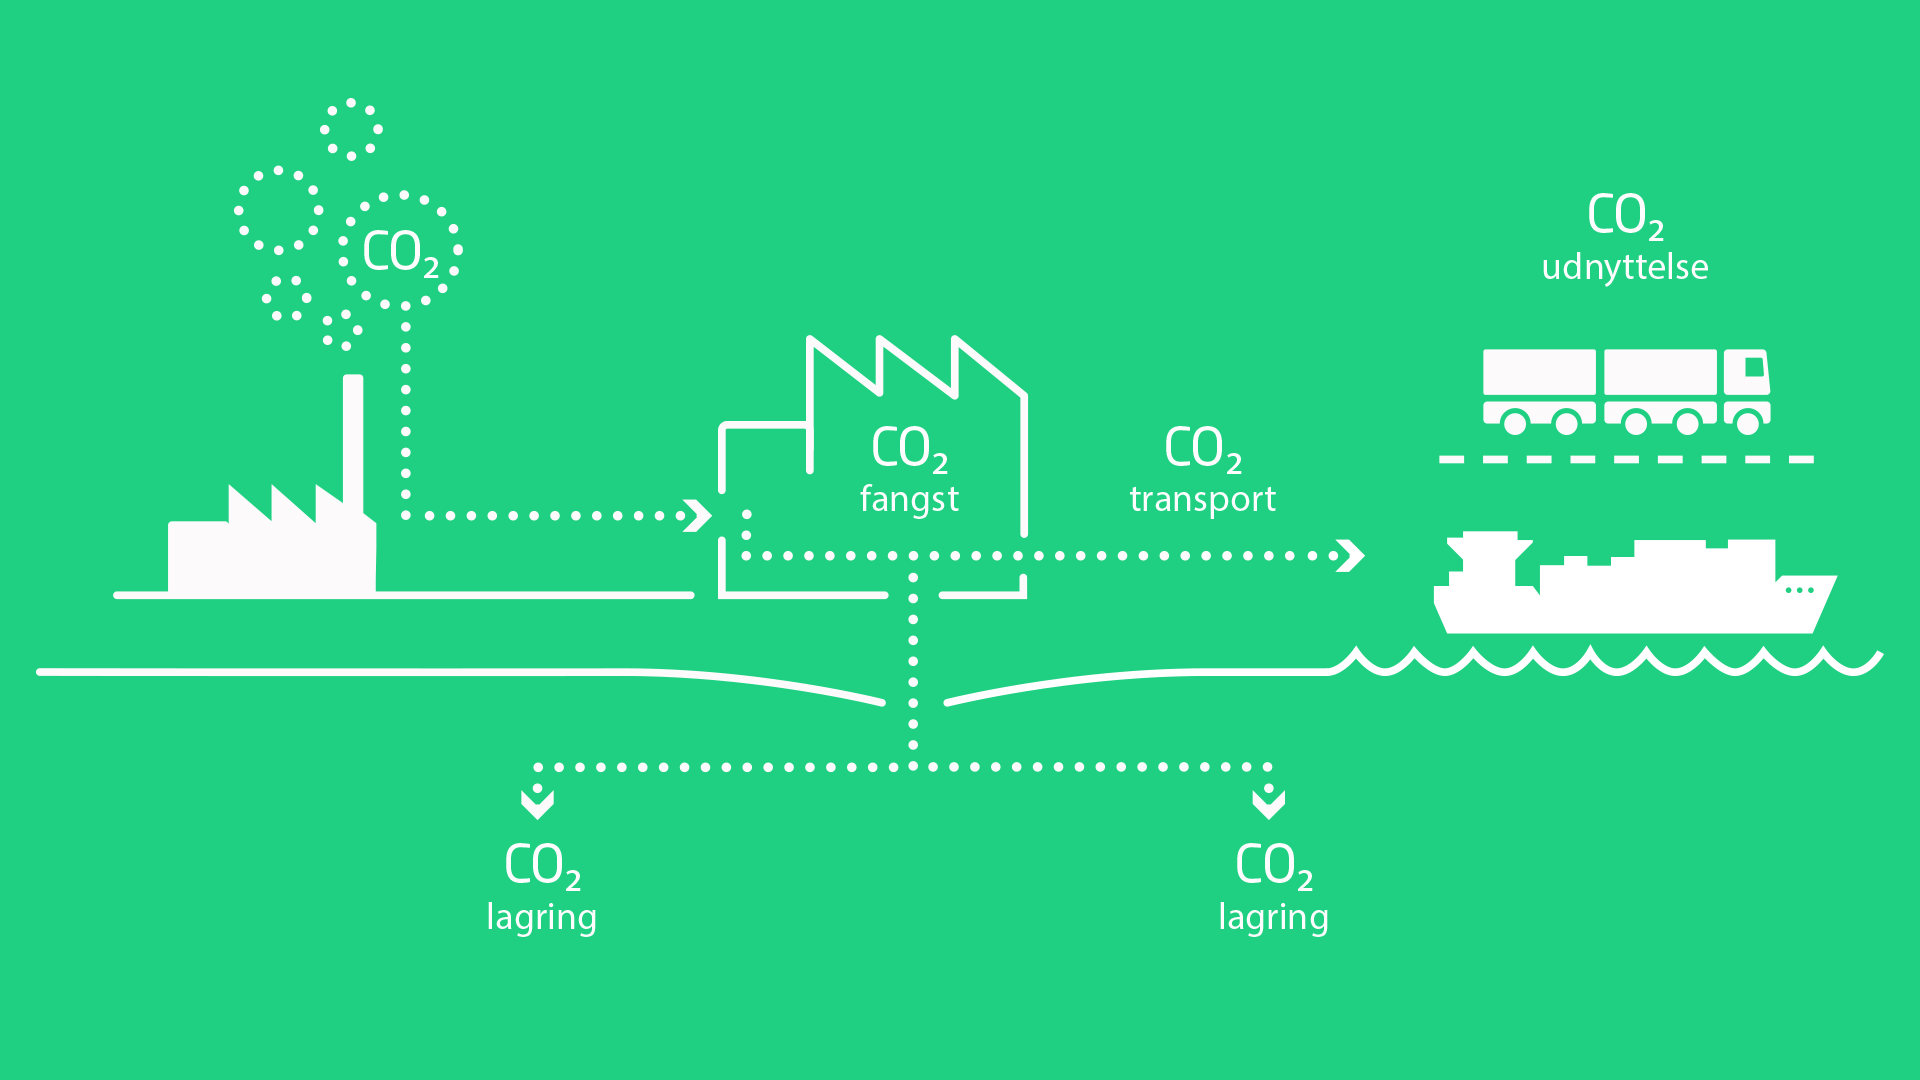 Illustration der viser hvordan CO2 fanges, lagres og udnyttes.